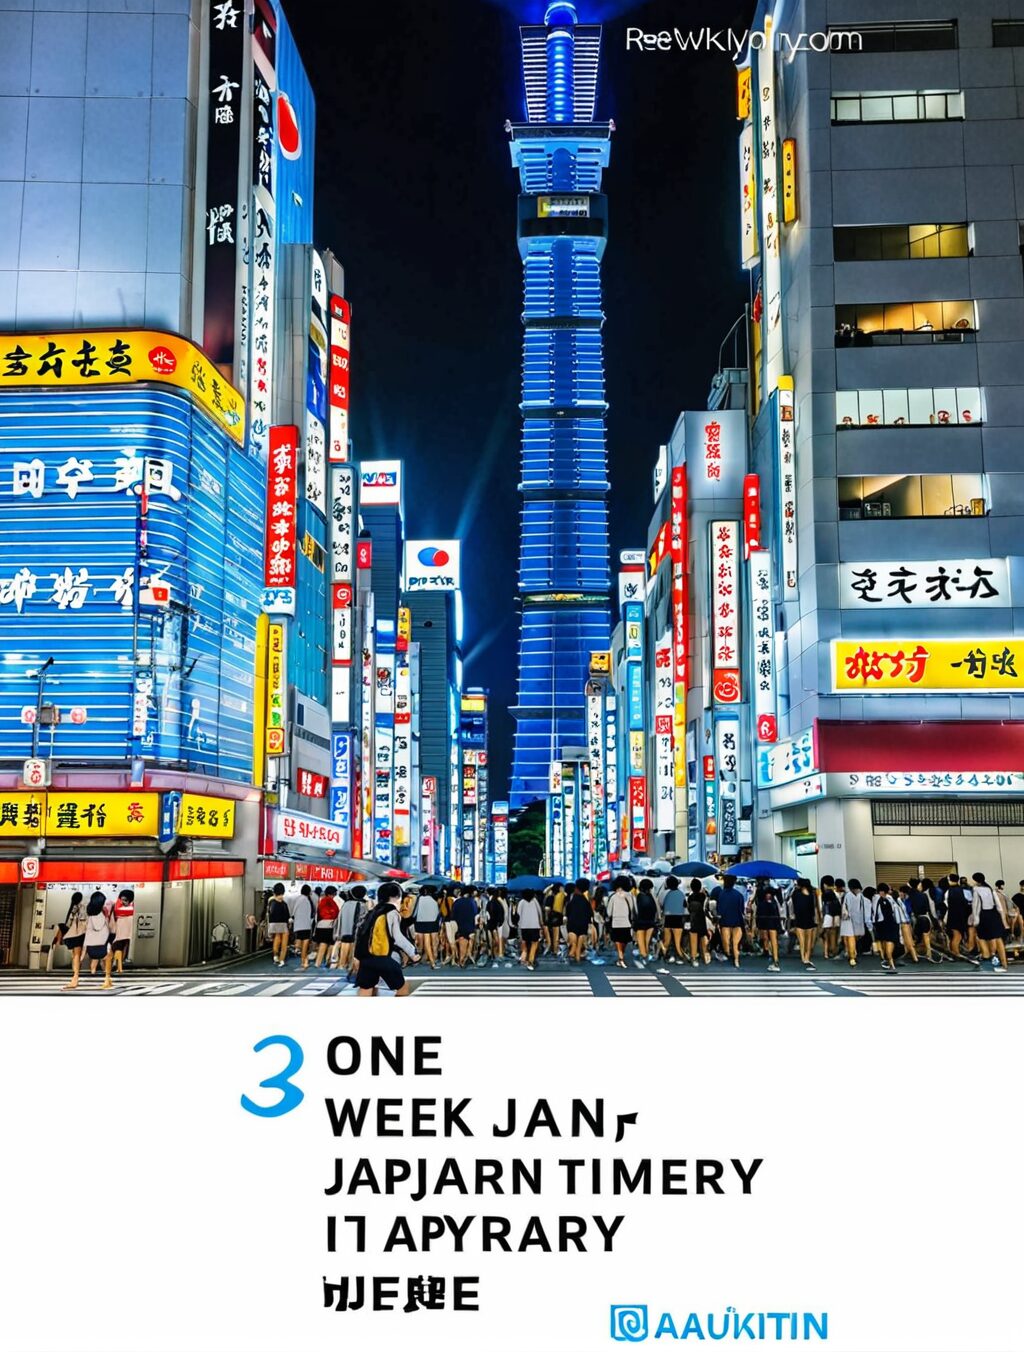 one week japan itinerary reddit